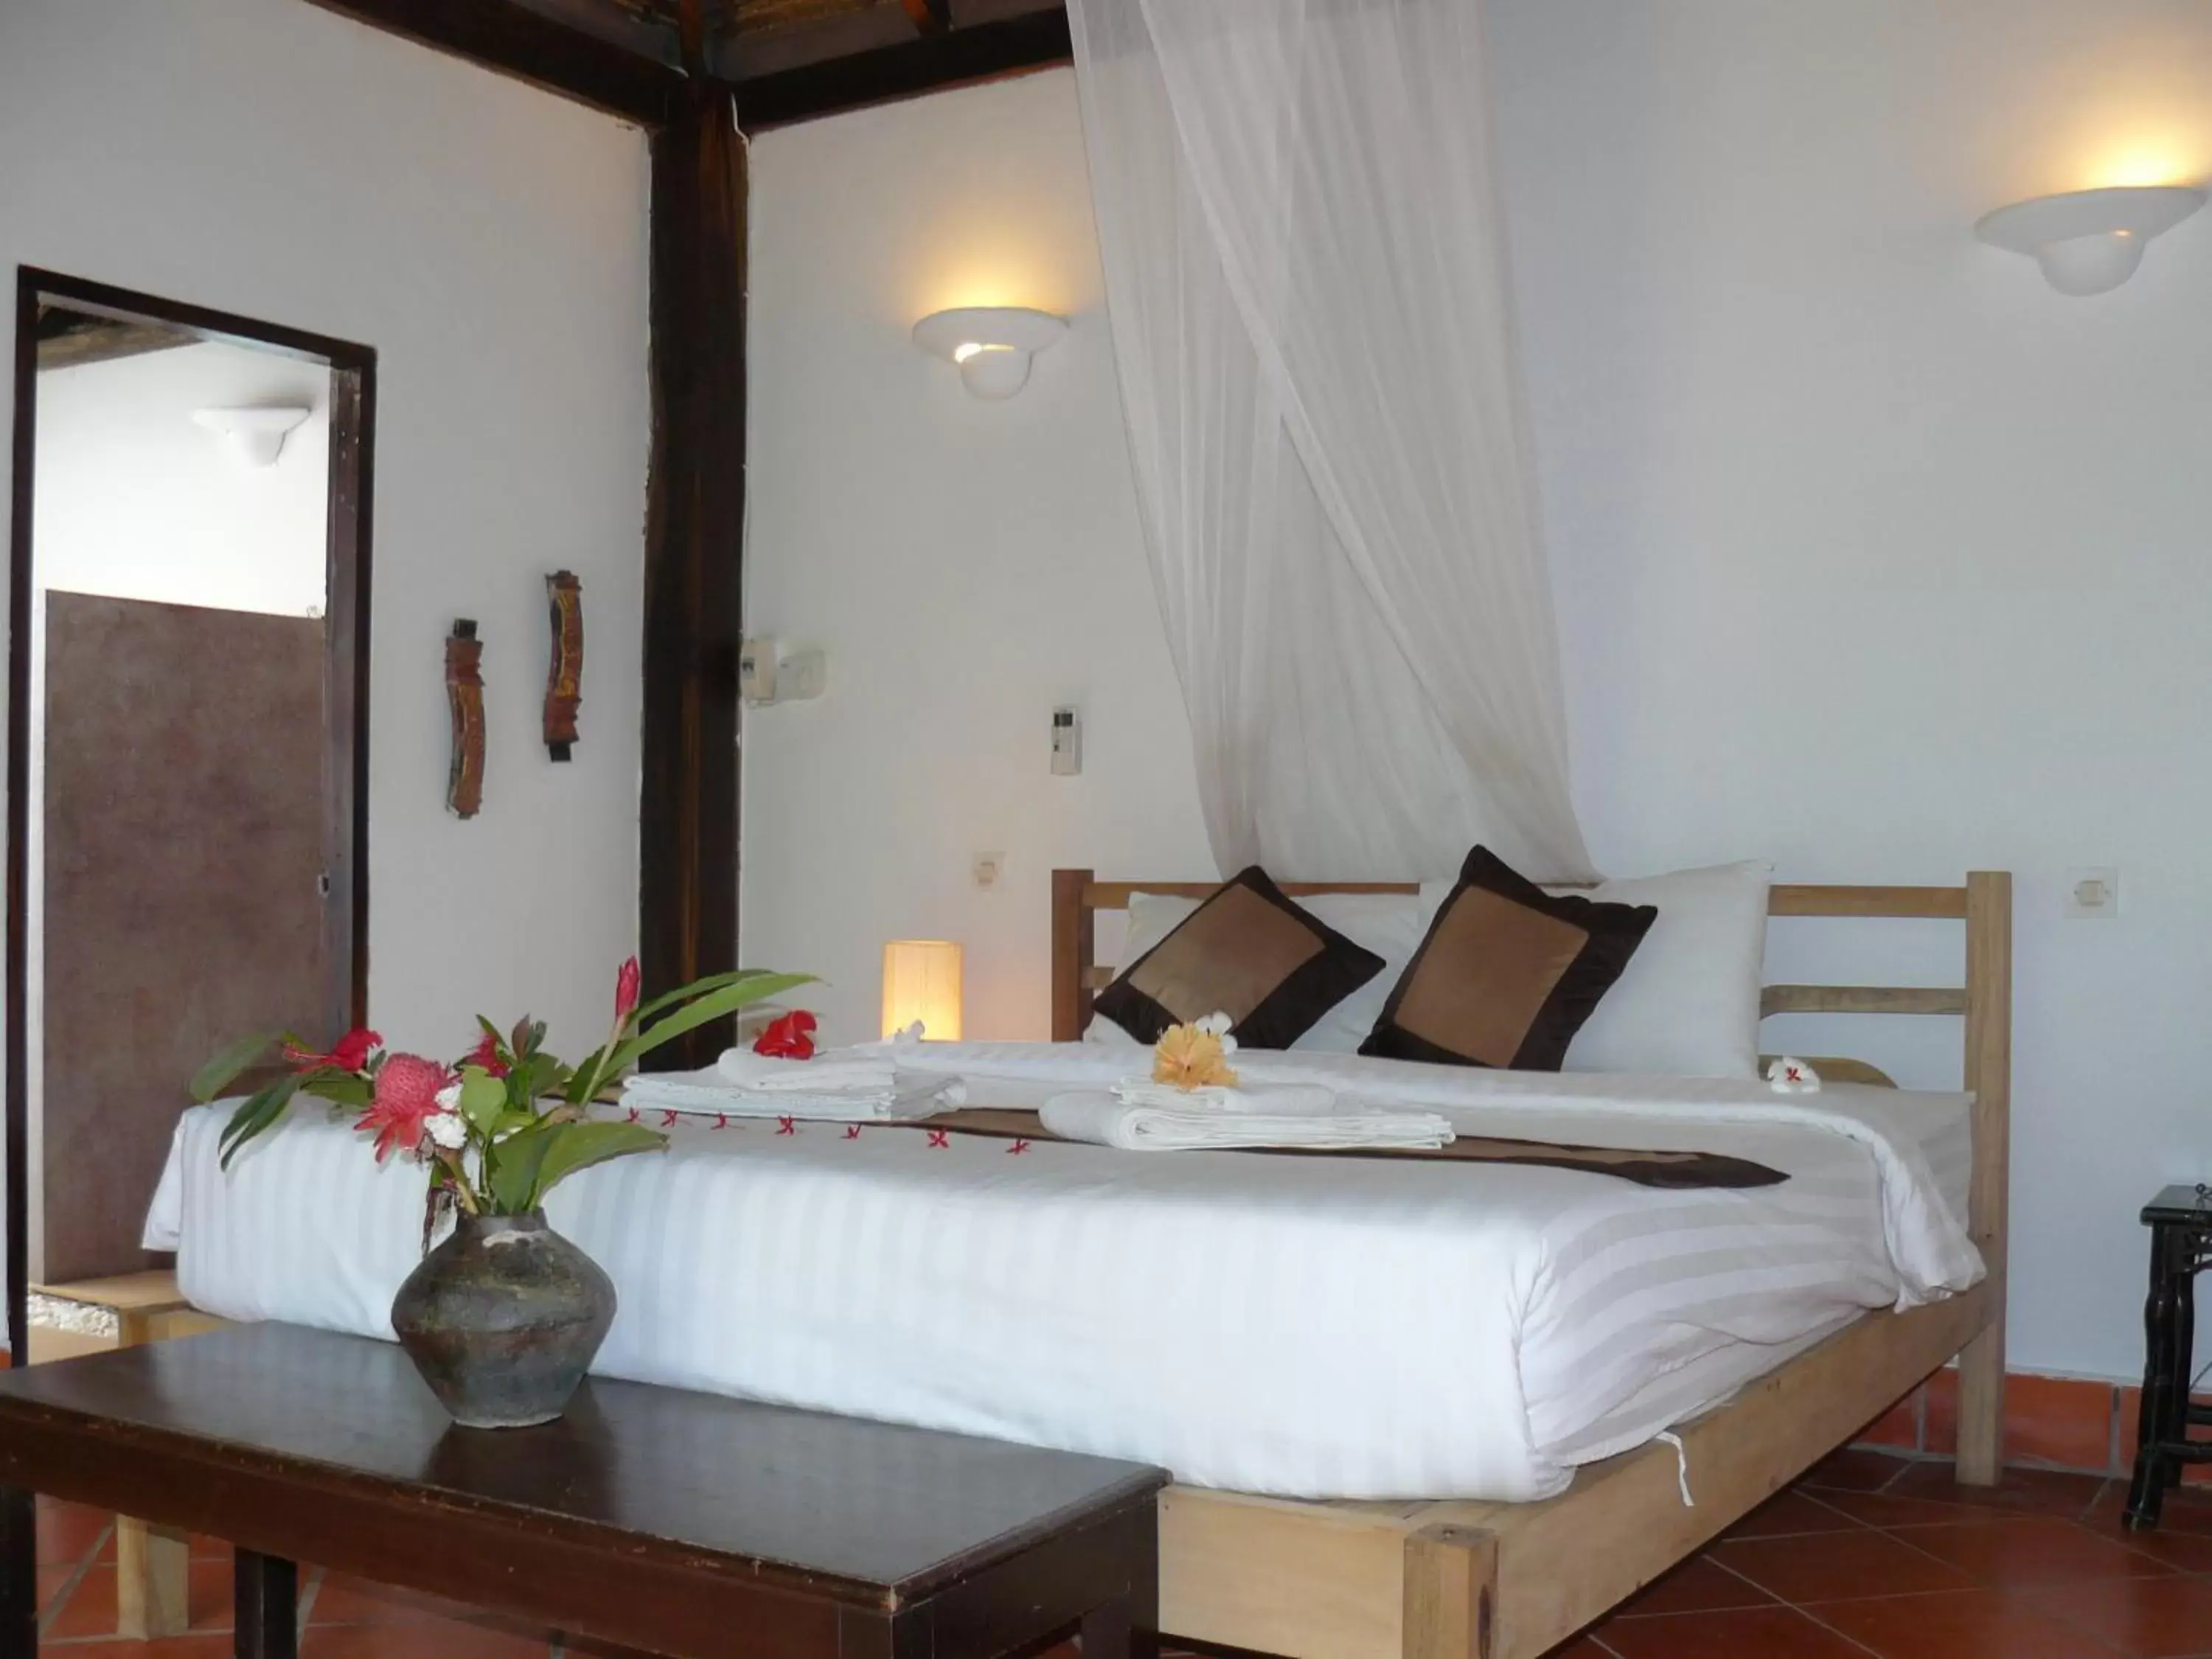 Bedroom, Bed in Mealea Resort